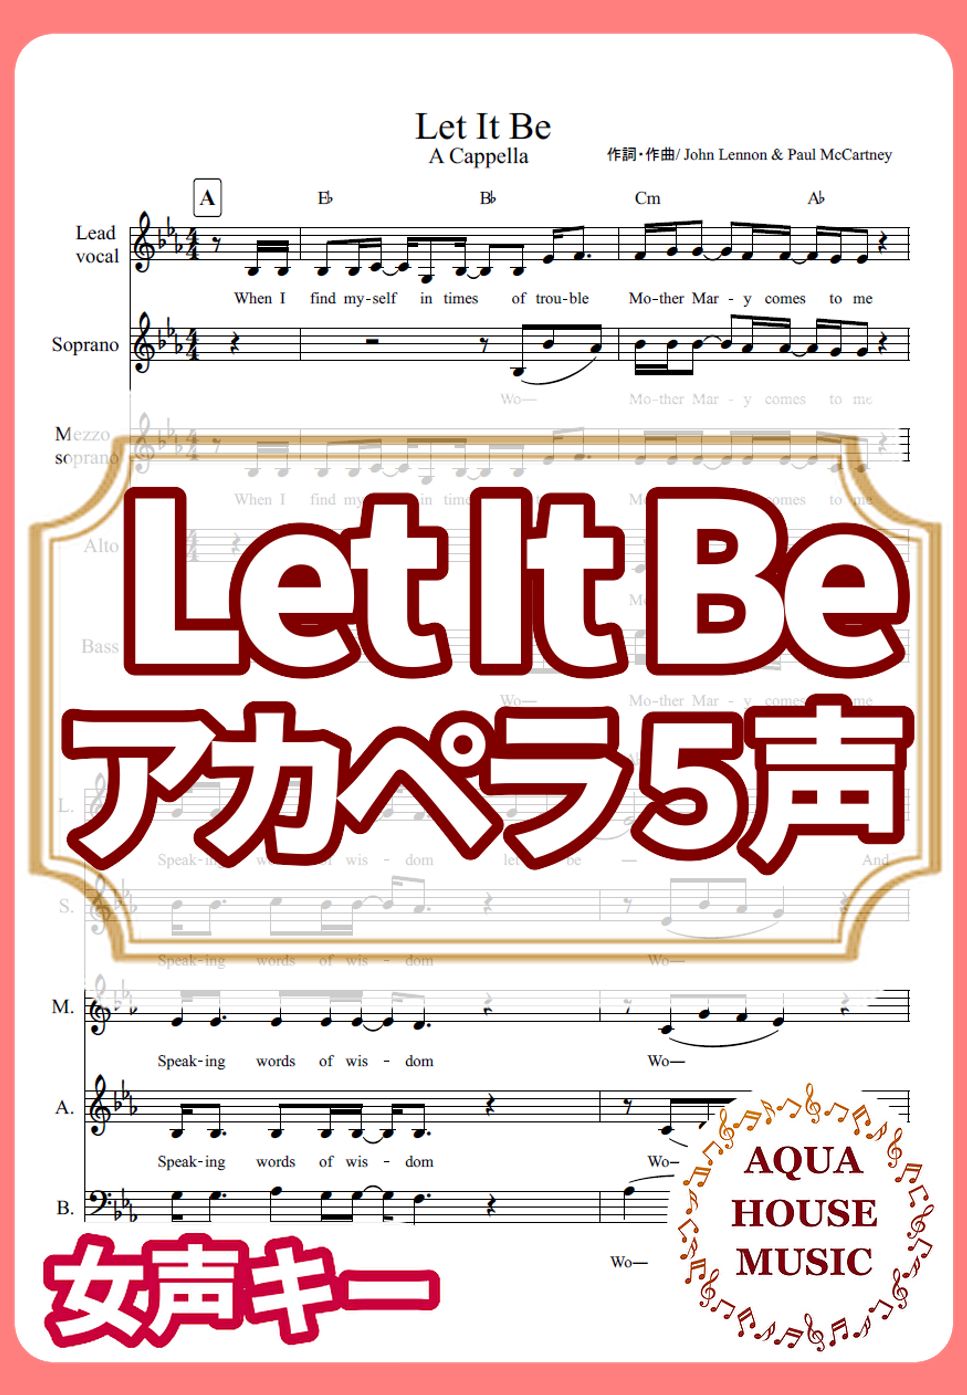 The Beatles - Let It Be (アカペラ楽譜♪5声ボイパなし) by 飯田 亜紗子